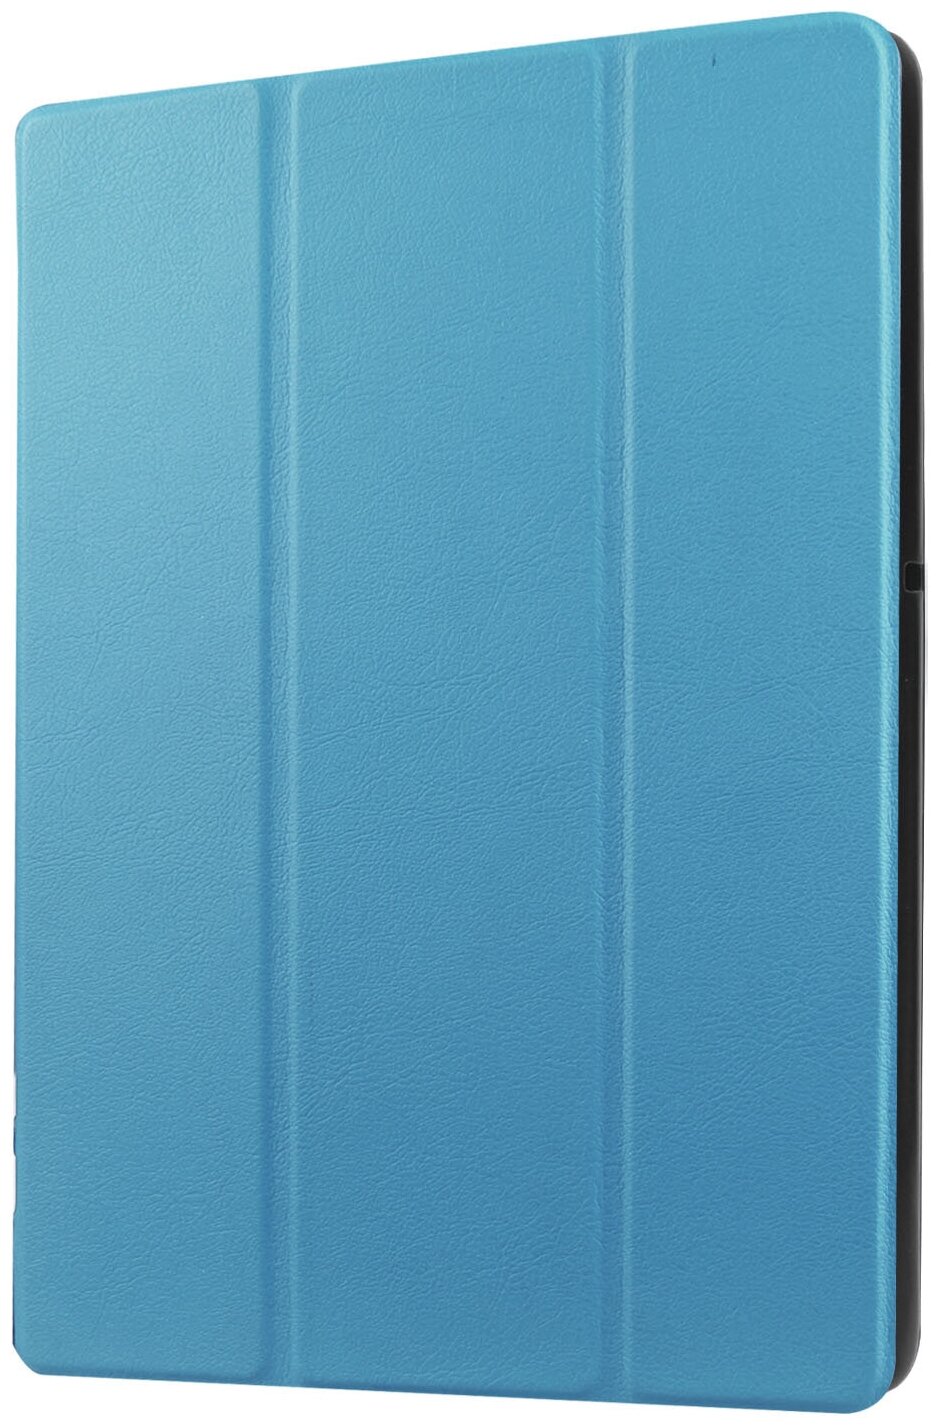 Чехол-обложка MyPads для Samsung Galaxy Tab A 8.0 (2017) SM-T380 / T380 / T385c тонкий умный кожаный на пластиковой основе с трансформацией в под.